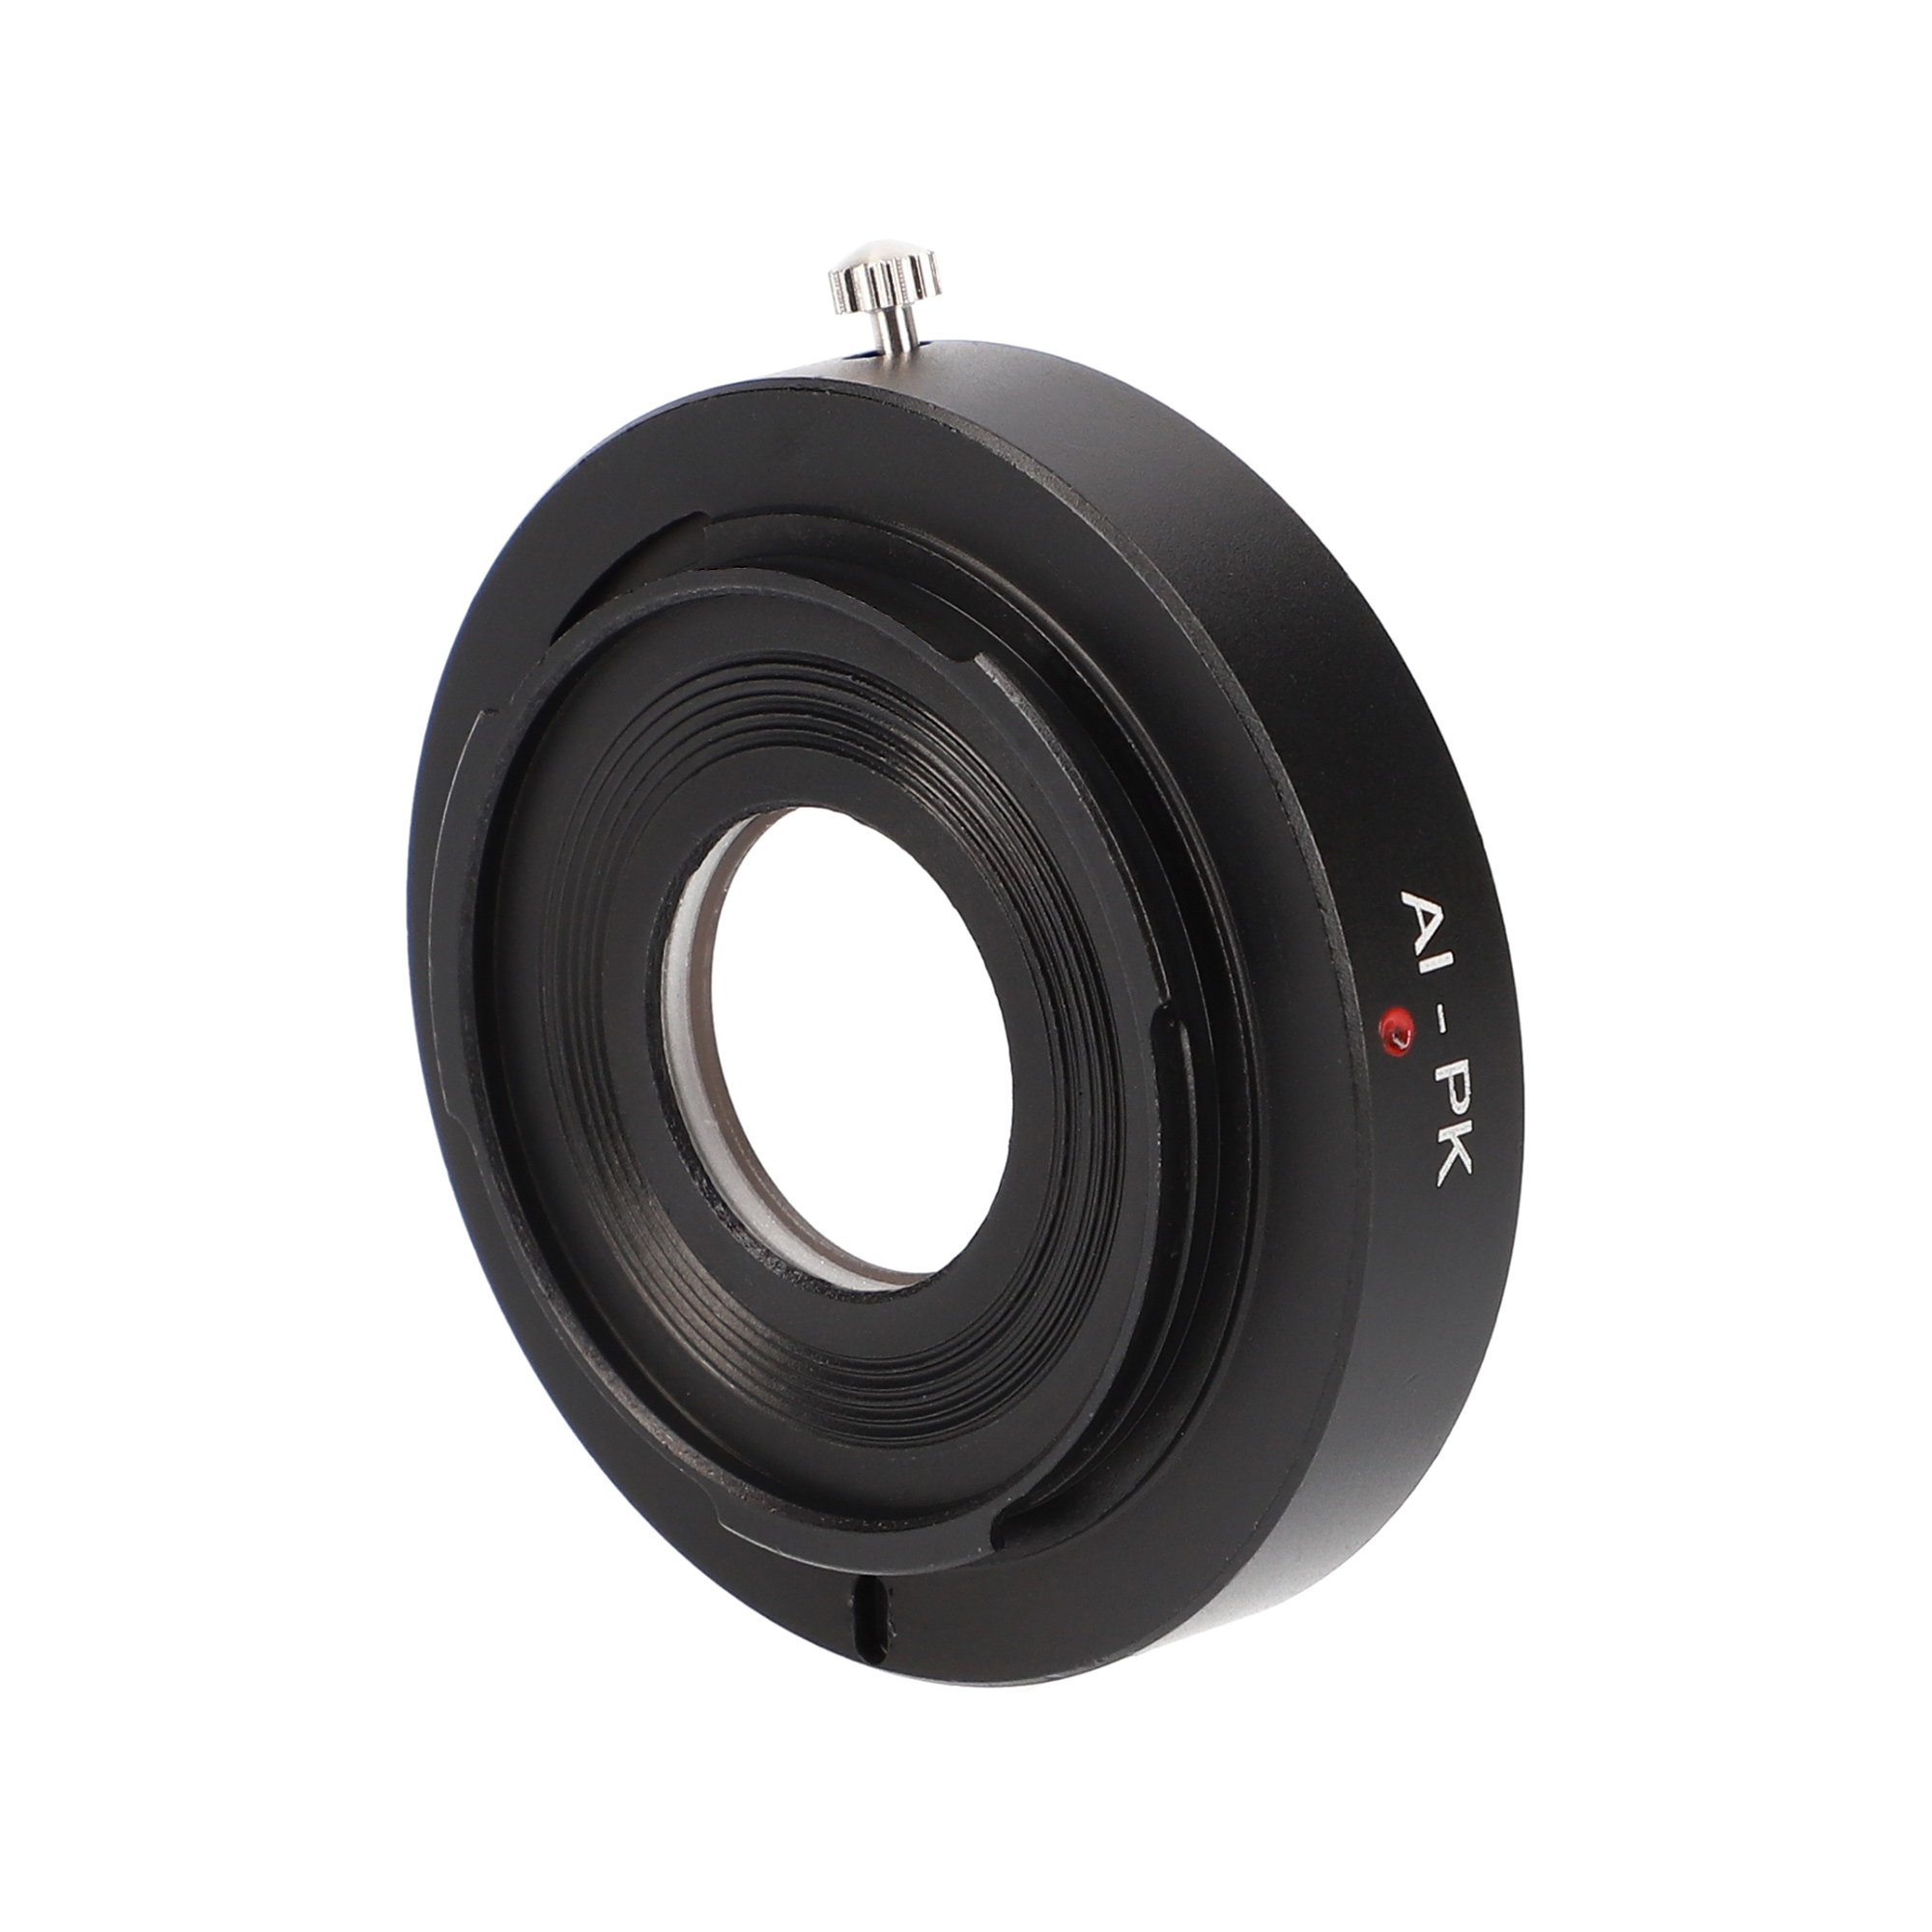 Objektivadapter für Nikon-Objektive an Pentax PK + Korrekturlinse